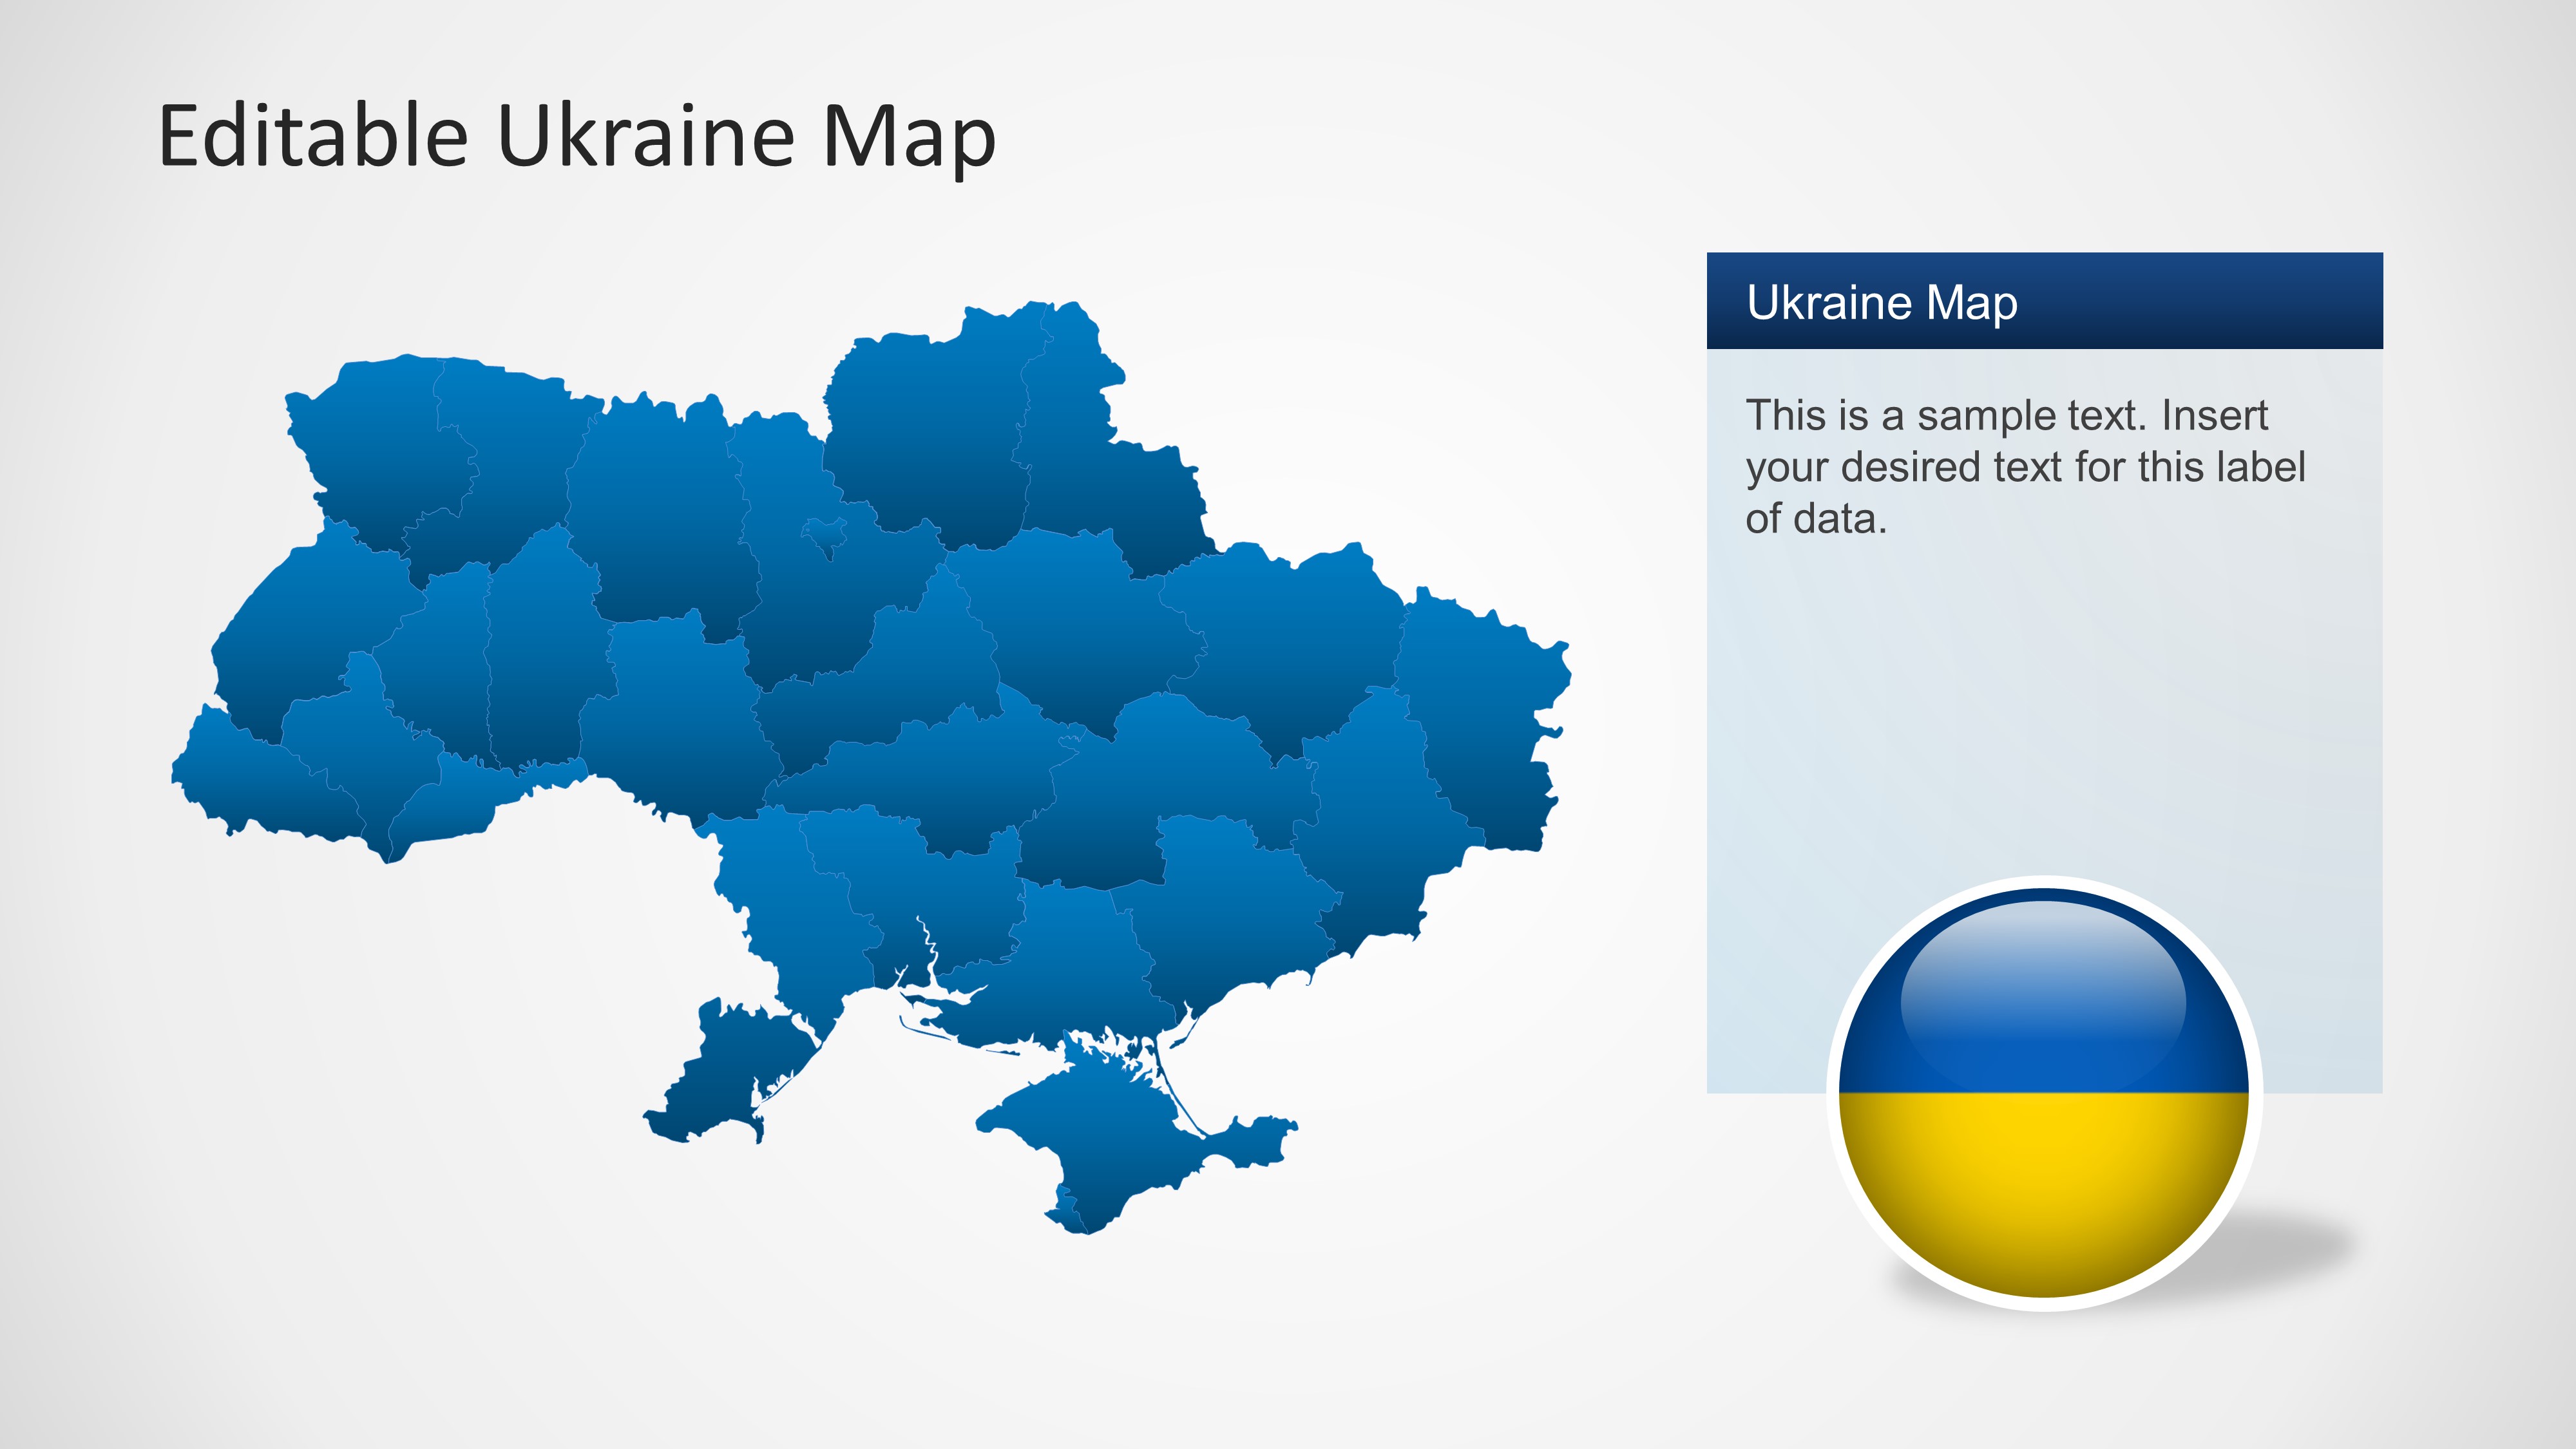 Bạn đang tìm kiếm một bản đồ Ukraine chuyên nghiệp cho bài thuyết trình PowerPoint của mình? Chúng tôi có một mẫu PowerPoint về Ukraine với bản đồ cập nhật mới nhất để bạn có thể thuyết trình một cách chuyên nghiệp và hiệu quả nhất.